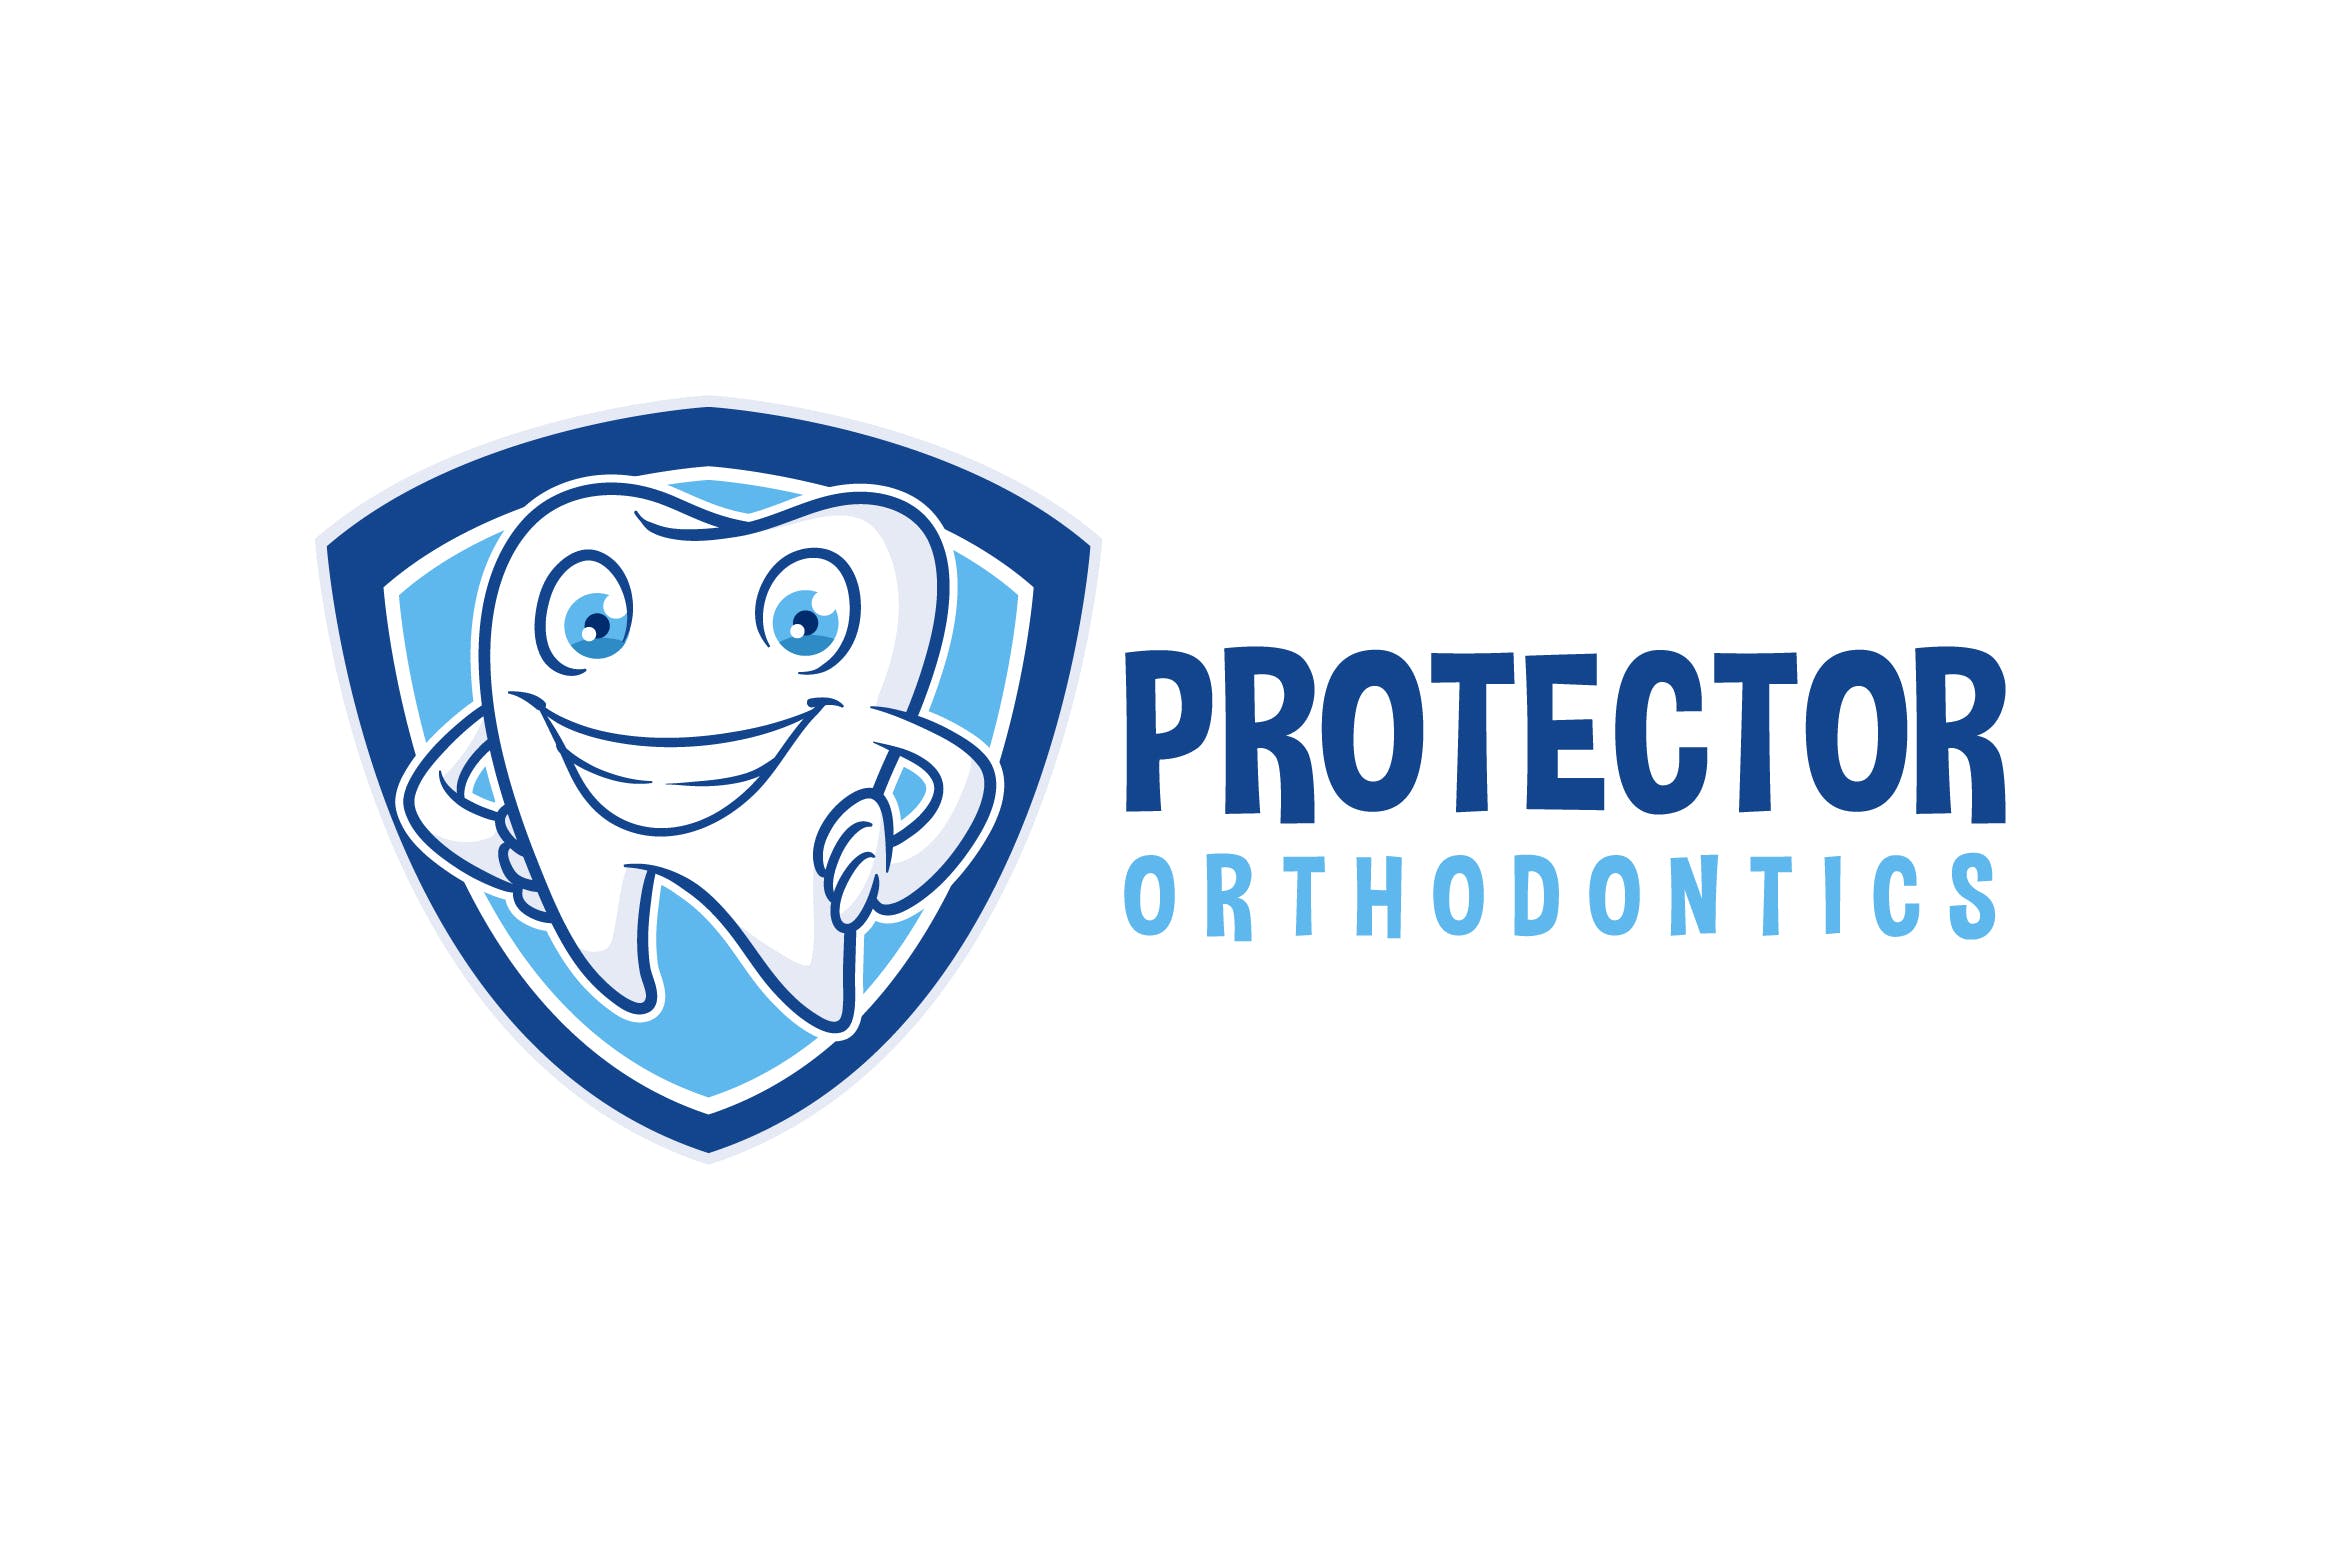 牙齿护理品牌Logo设计模板素材 Tooth Protector – Dental Character Mascot Logo插图